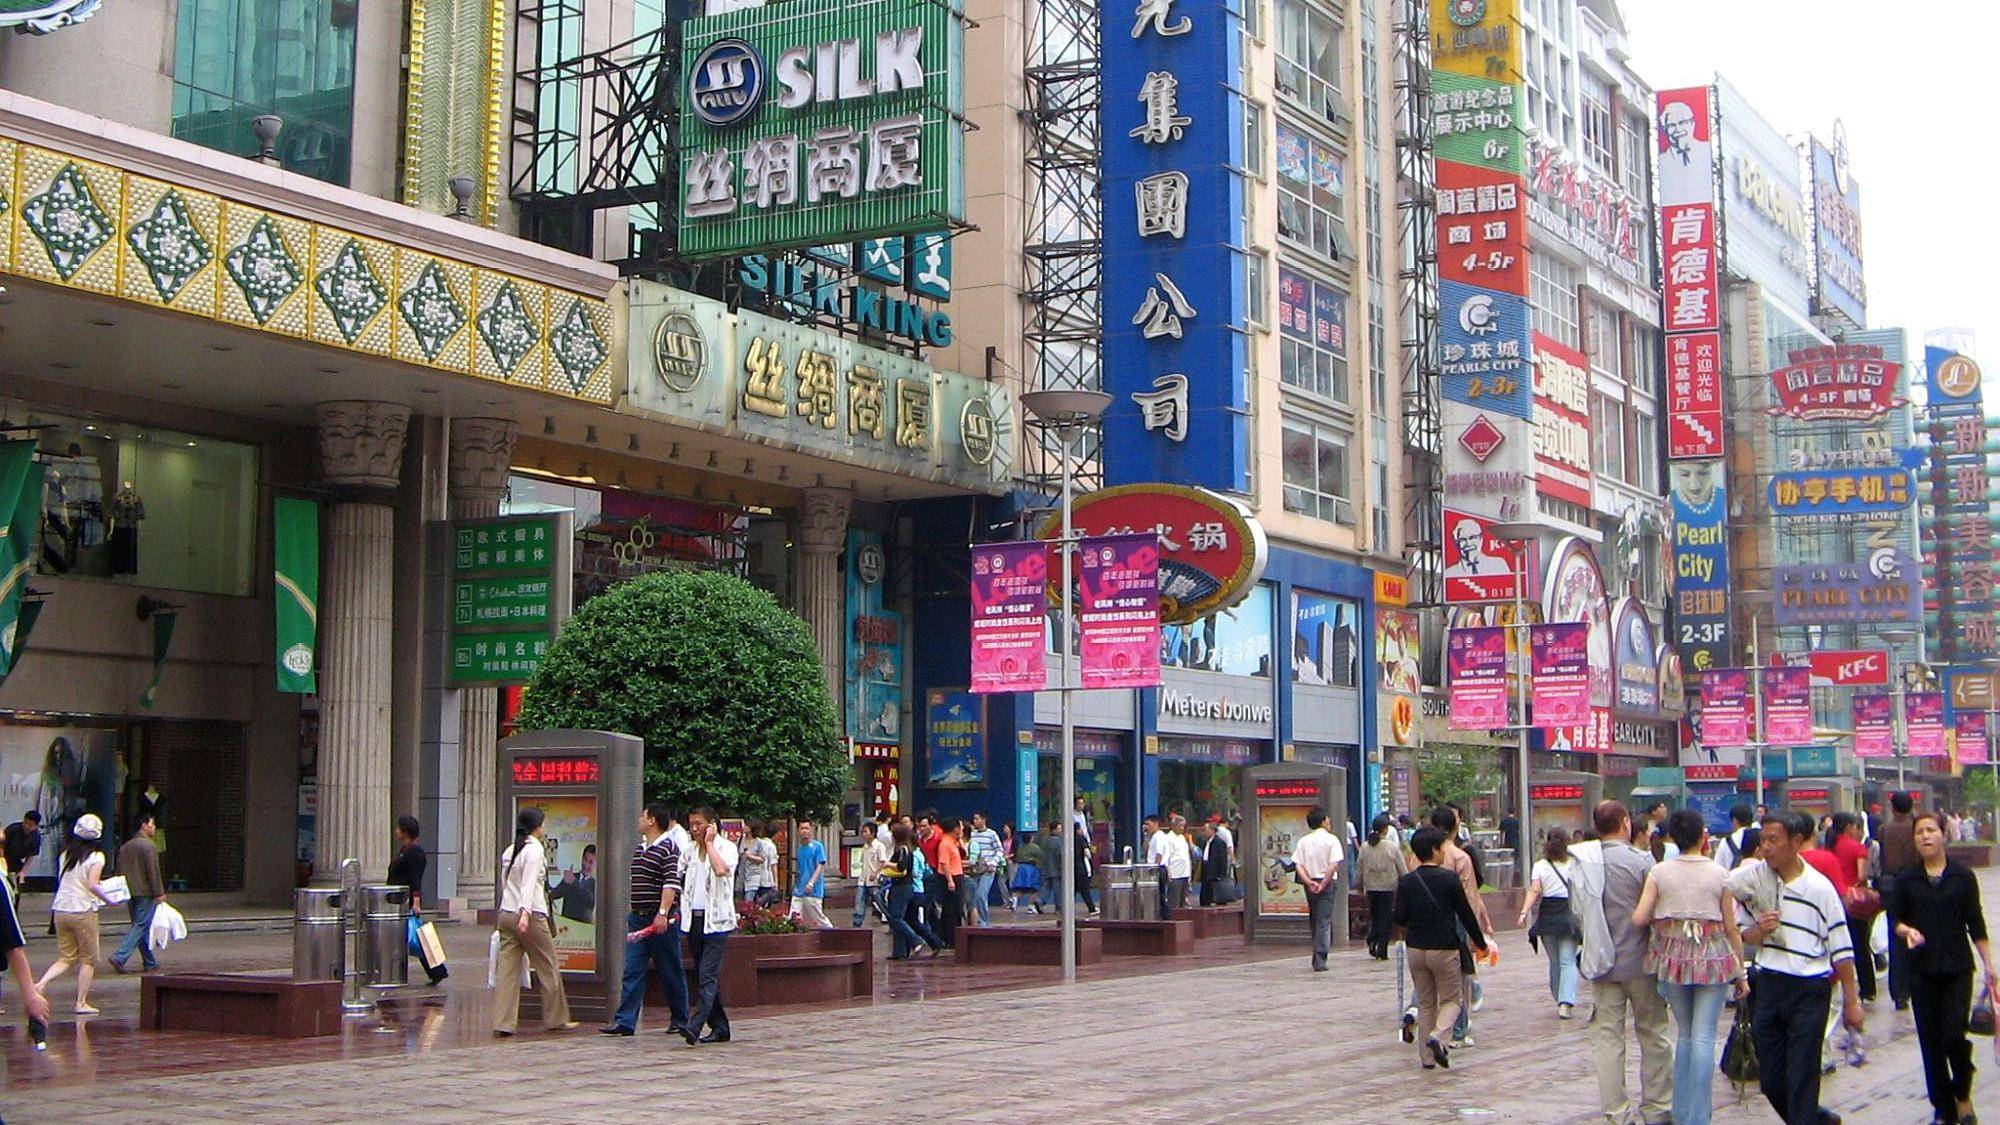 很多游客困惑,上海南京路与南京上海路,它们有什么特别关系吗?